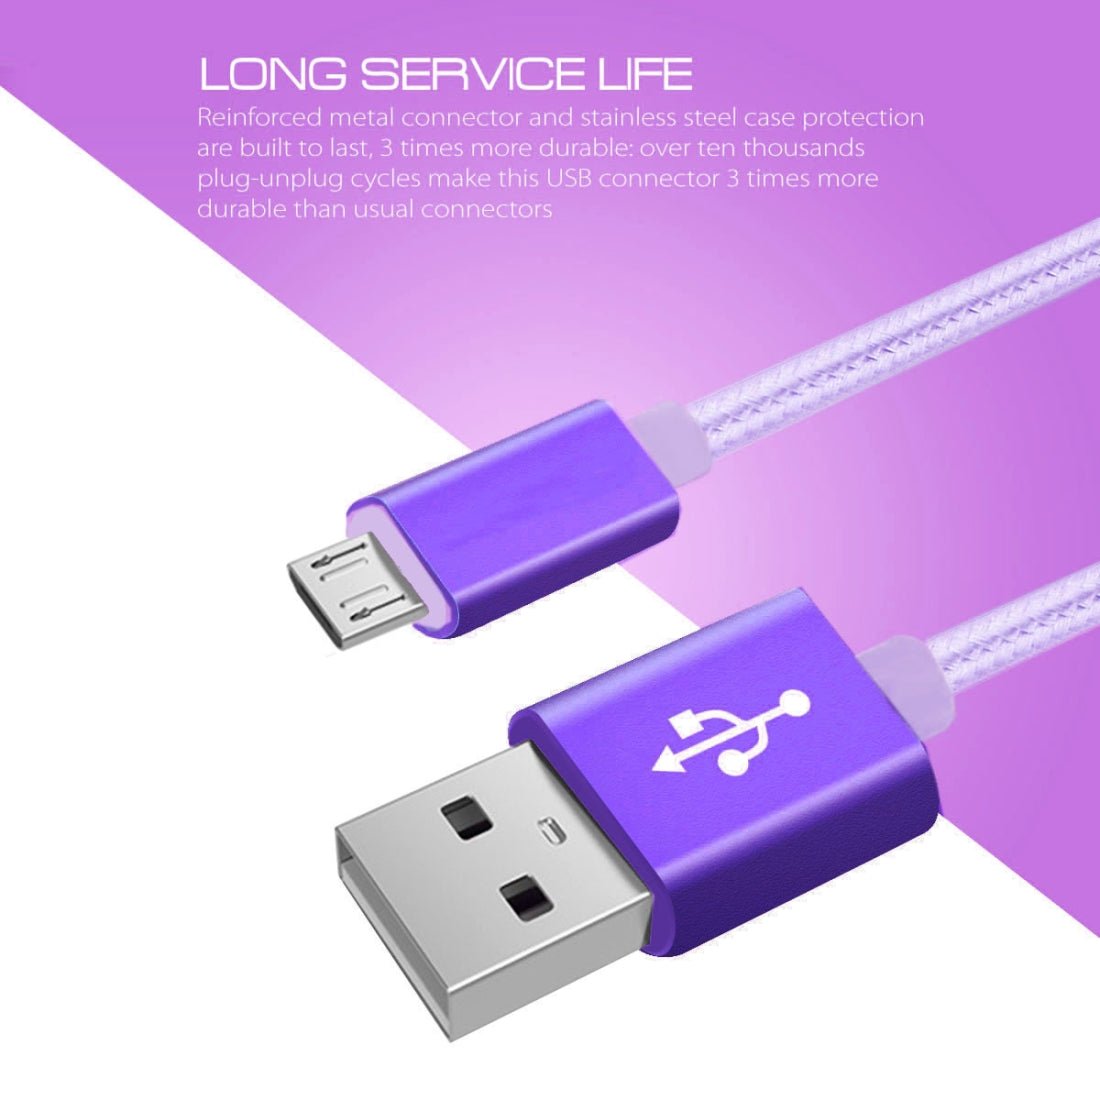 Ladekabel Micro-USB Violett Schnellladekabel 3m - Calitronshop.com